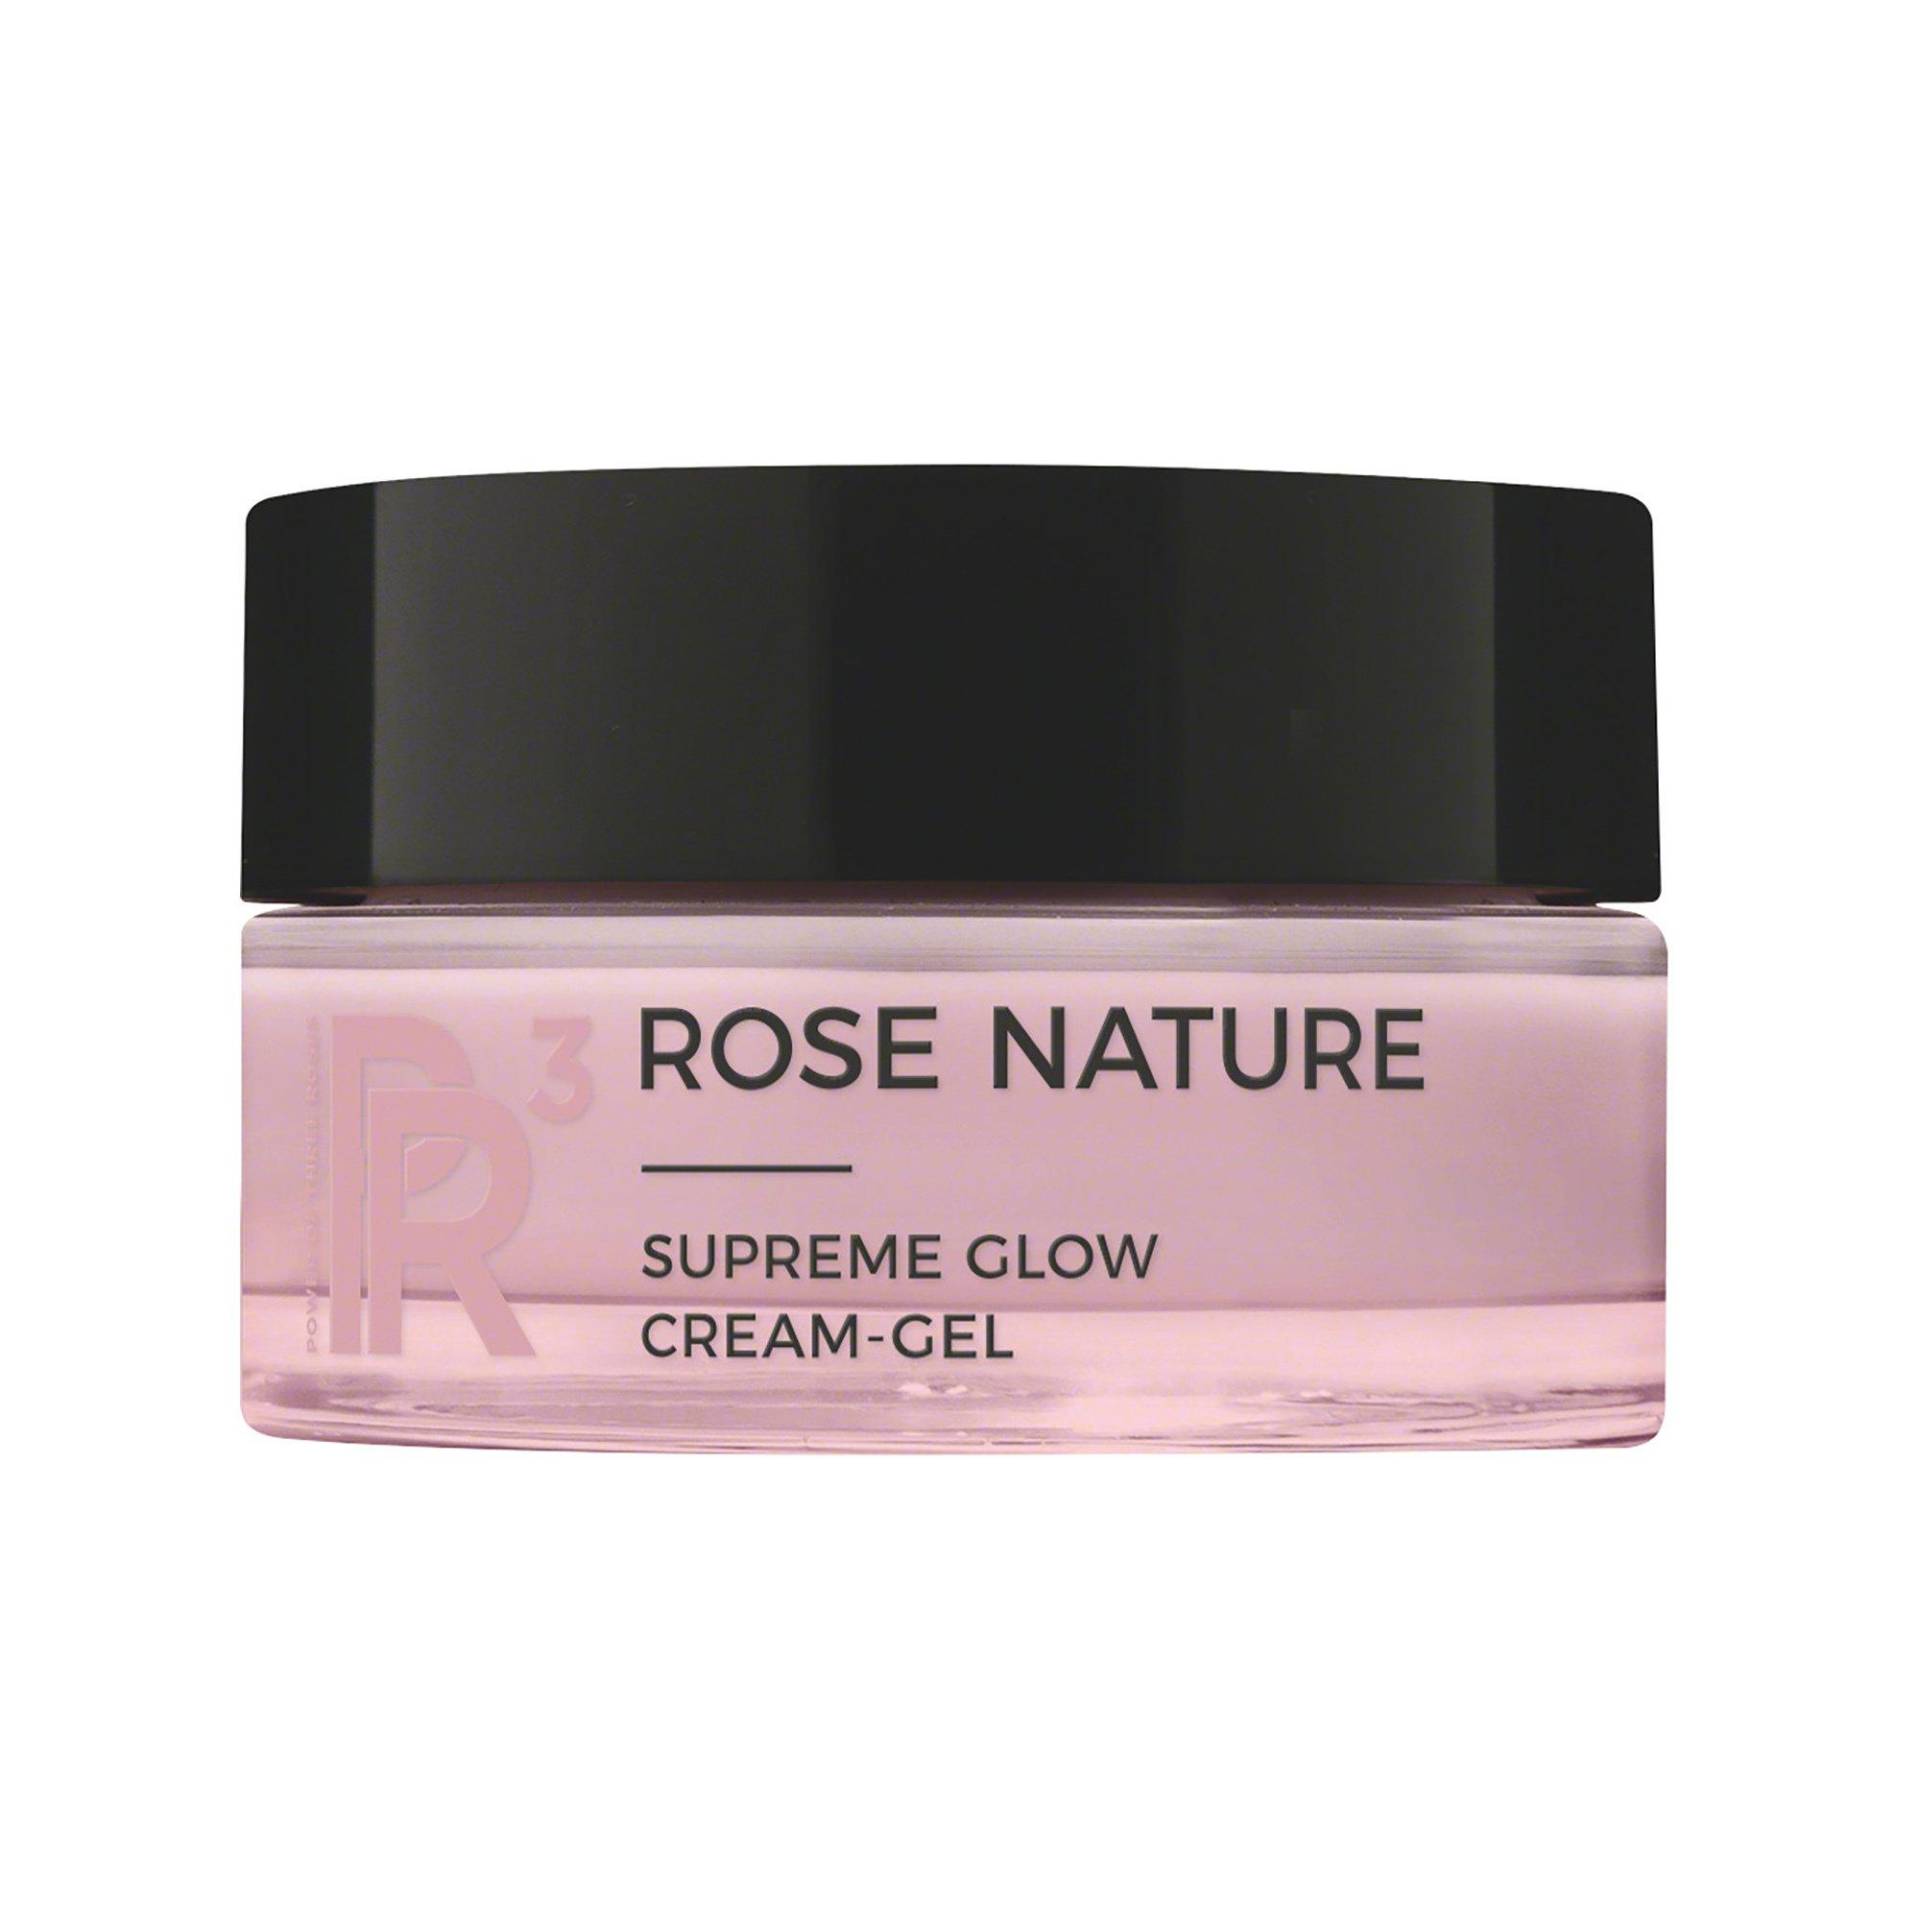 Rose Nature Supreme Glow Cream-gel Damen  50ml von Annemarie Börlind